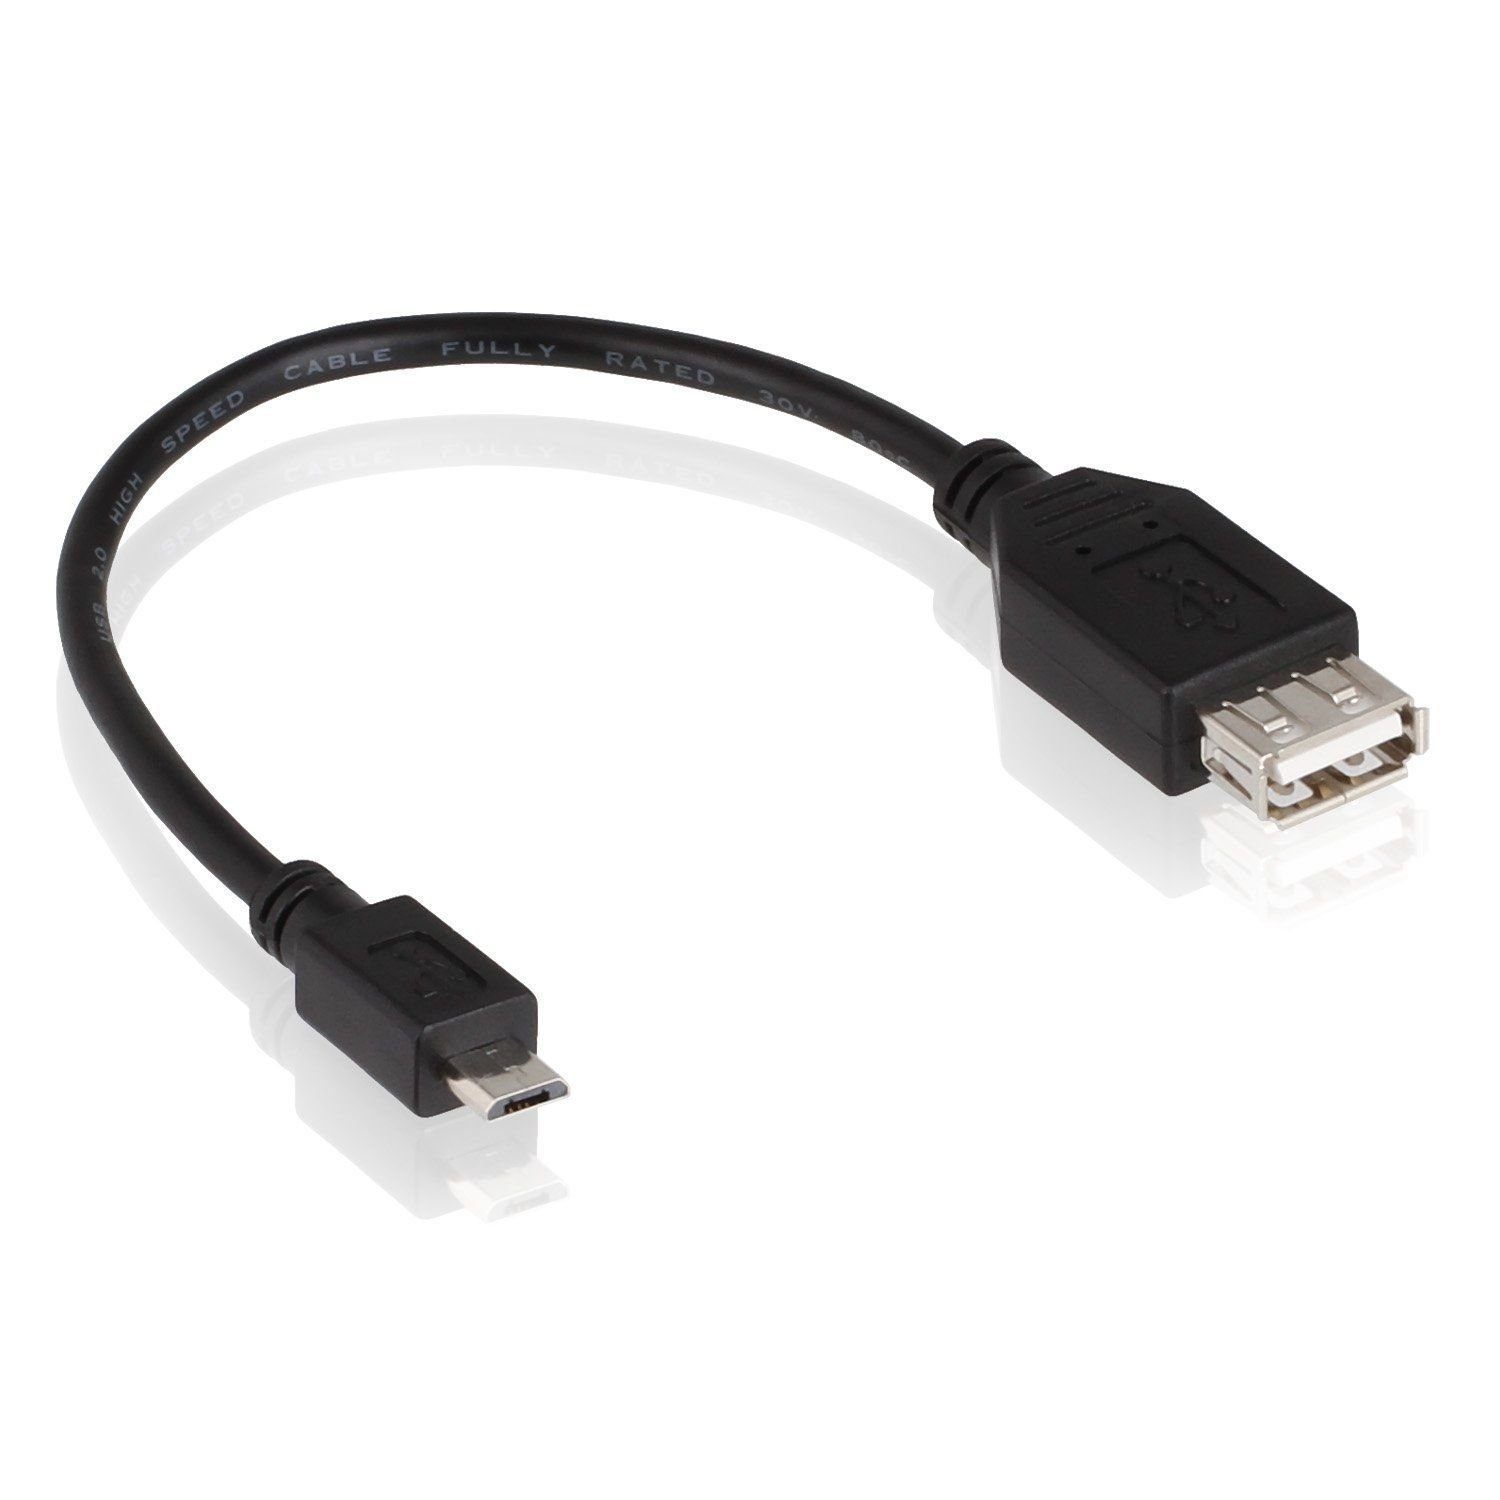 Wicked Chili microUSB OTG Adapter-Kabel für Samsung Handy und USB-Adapter  MicroUSB zu USB-A, 20 cm, Für OTG-fähige Smartphones / Tablets mit microUSB  Anschluss